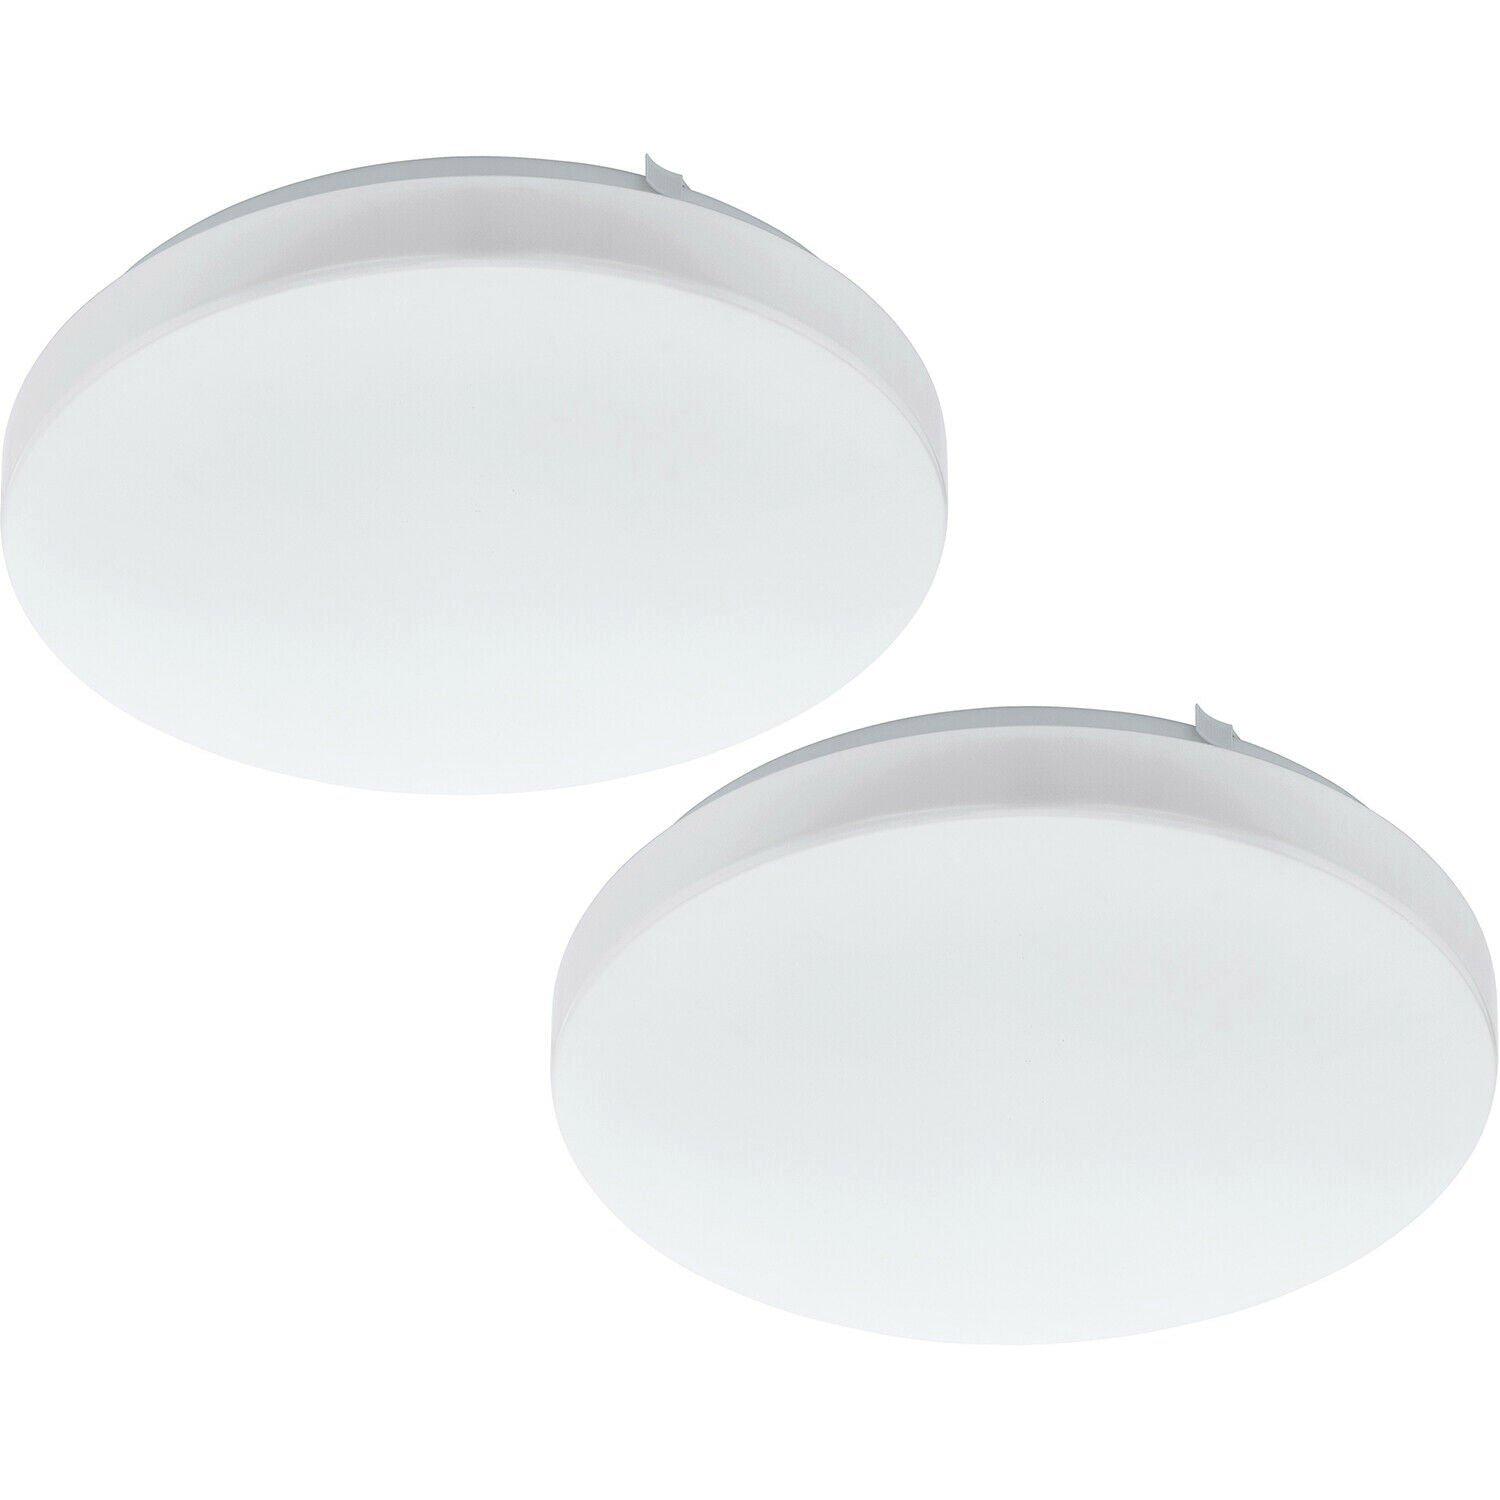 2 PACK Wall Flush Ceiling Light Colour White Shade White Plastic Bulb LED 11.5W